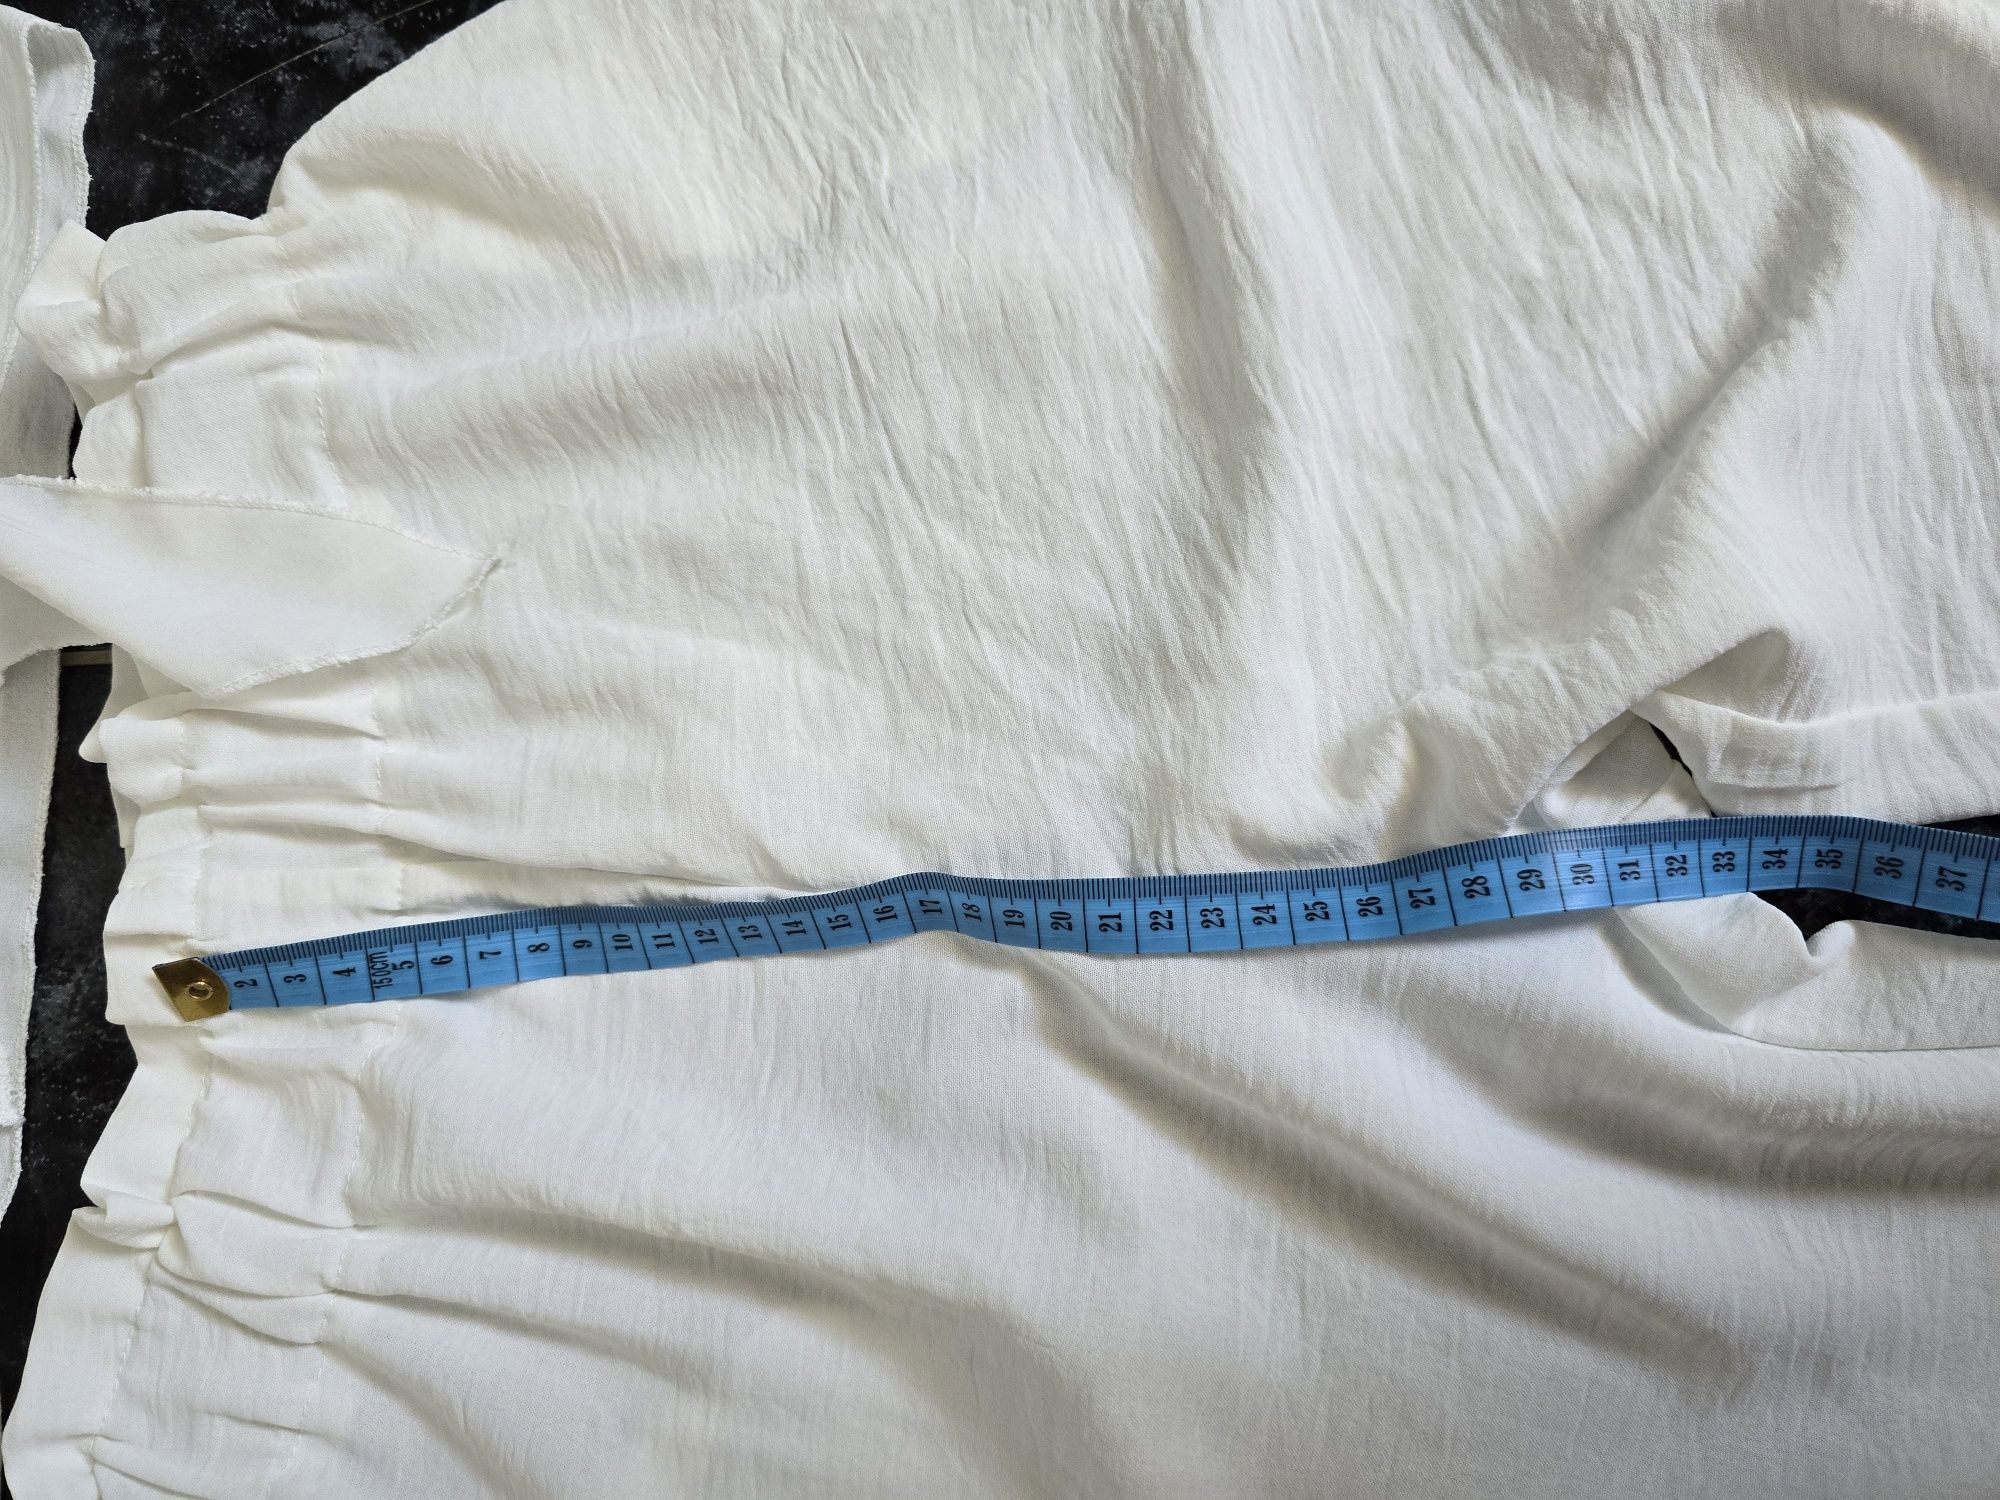 Komplet Biała bluzka spodnie szeroka nogawka 36 38